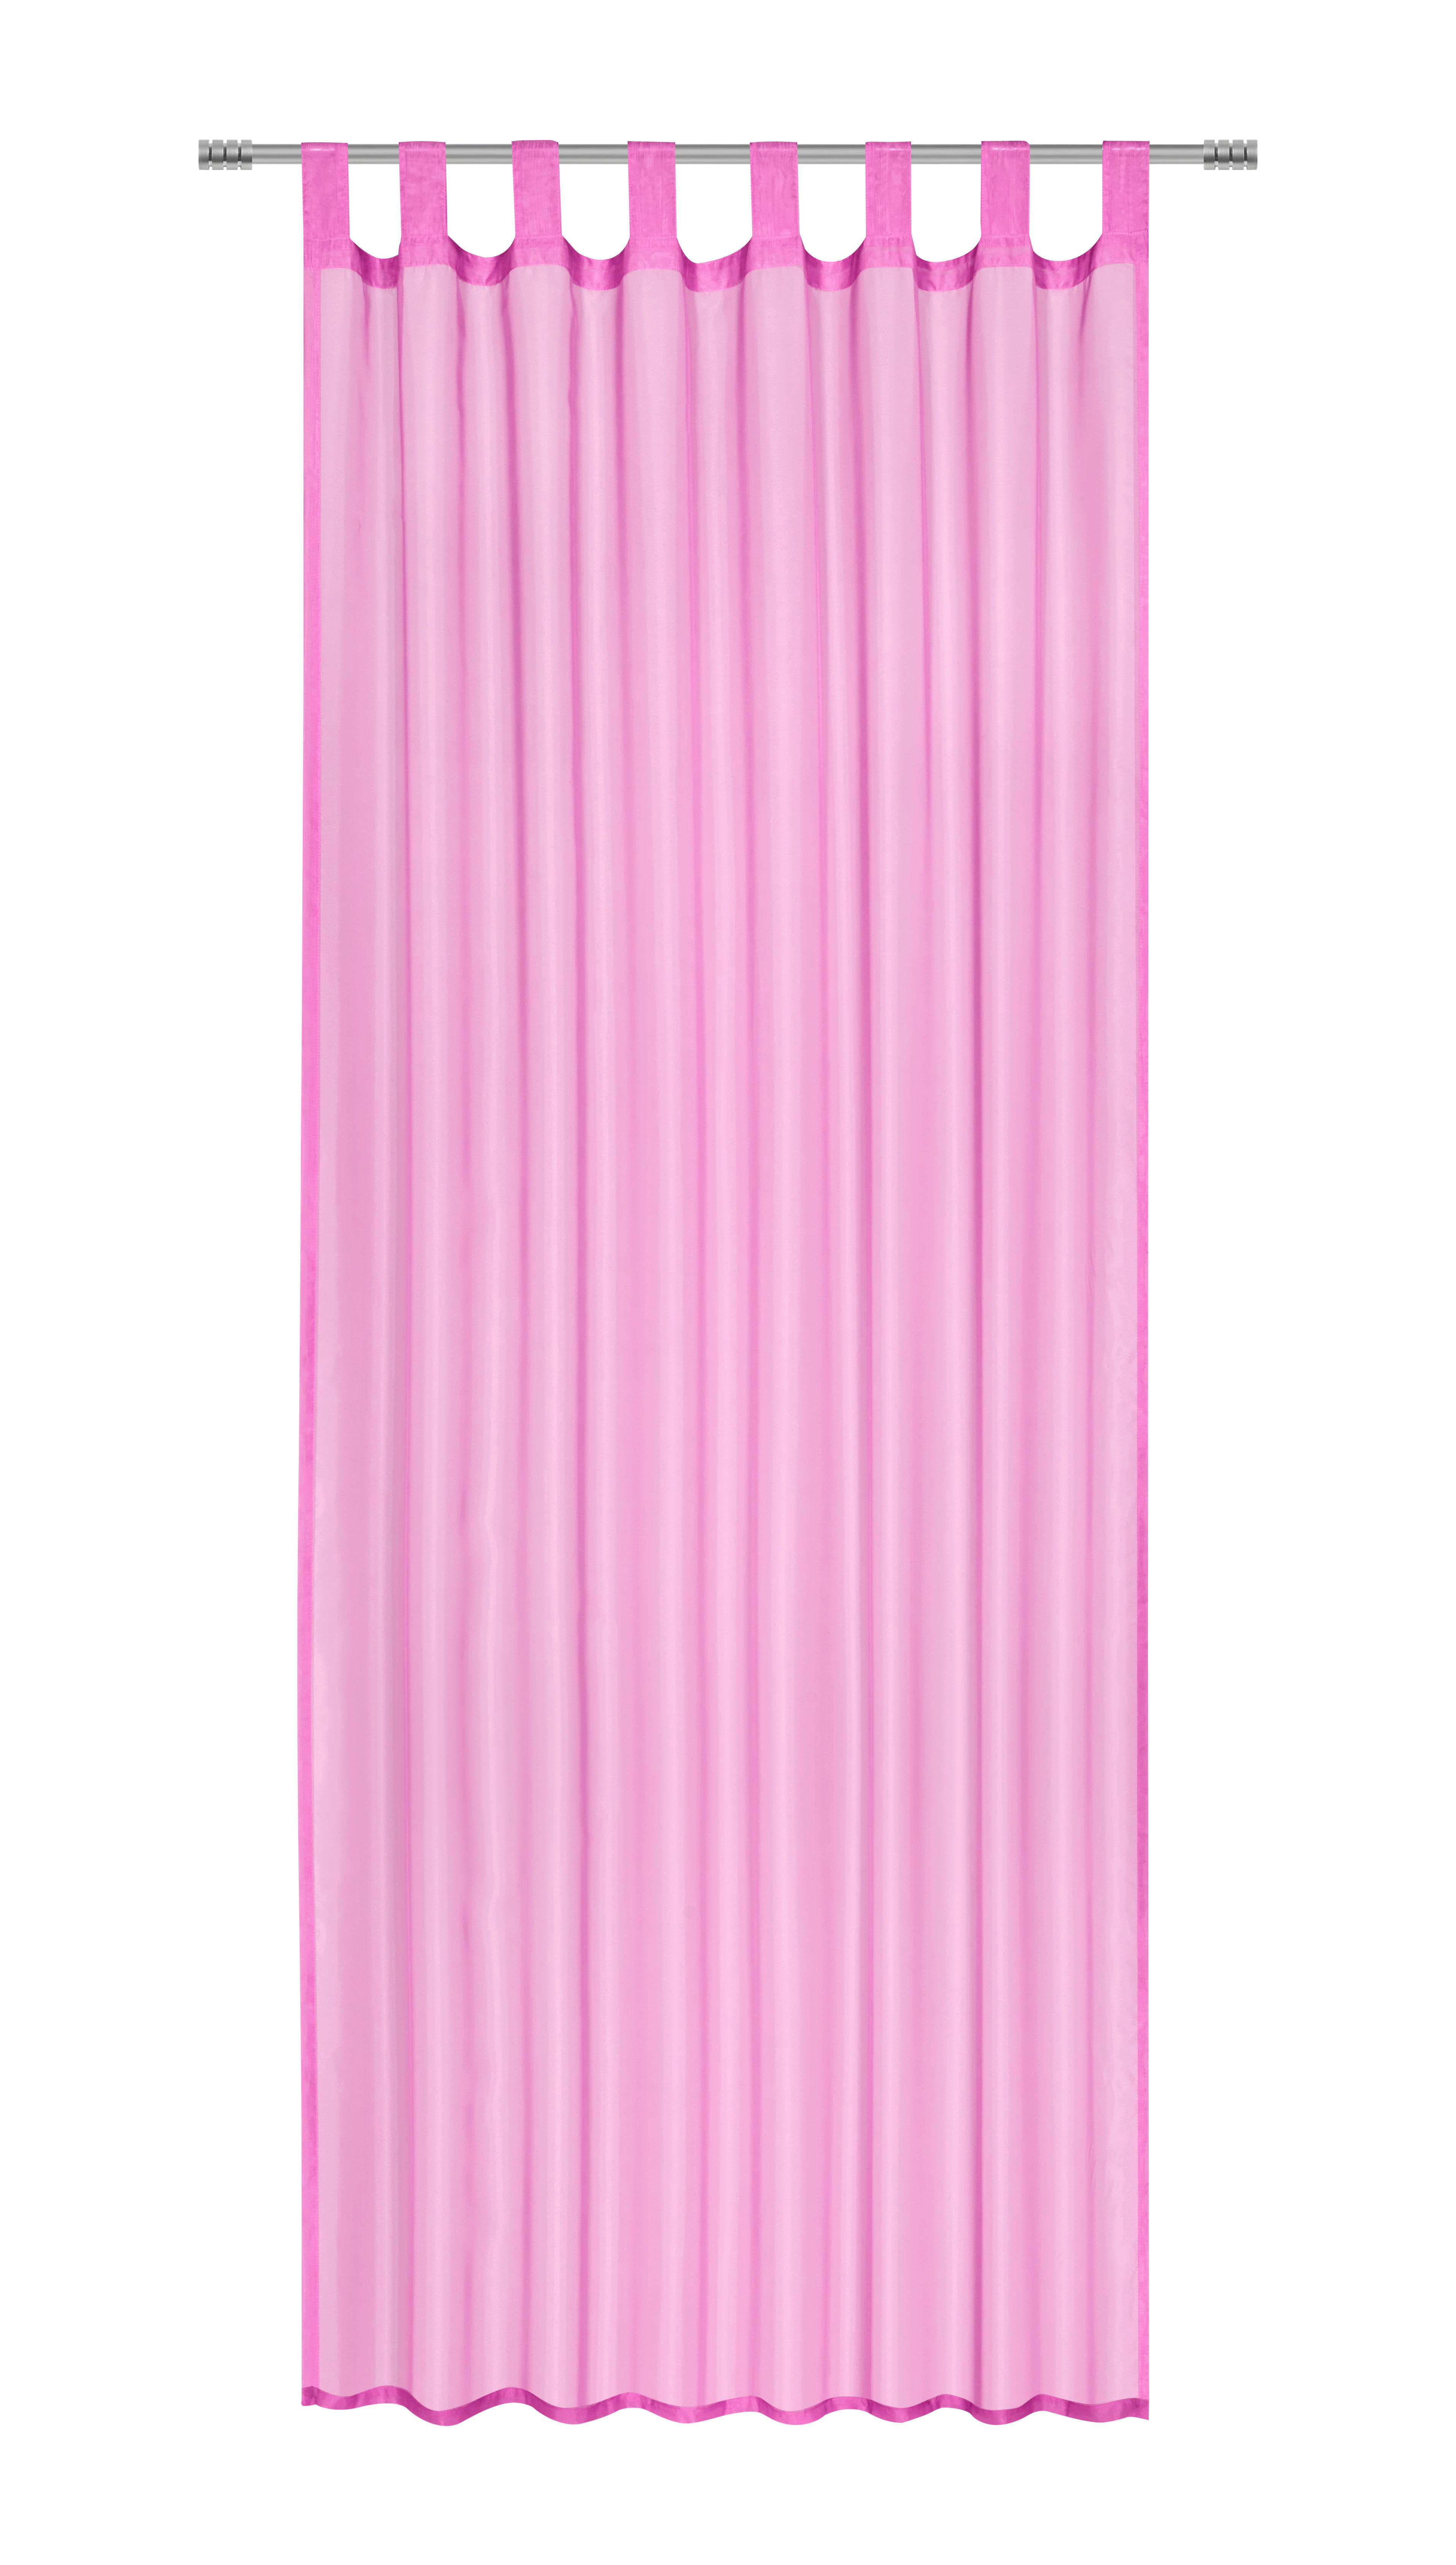 HÄLLBANDSLÄNGD transparent  - pink, Basics, textil (140/245cm) - Best Price